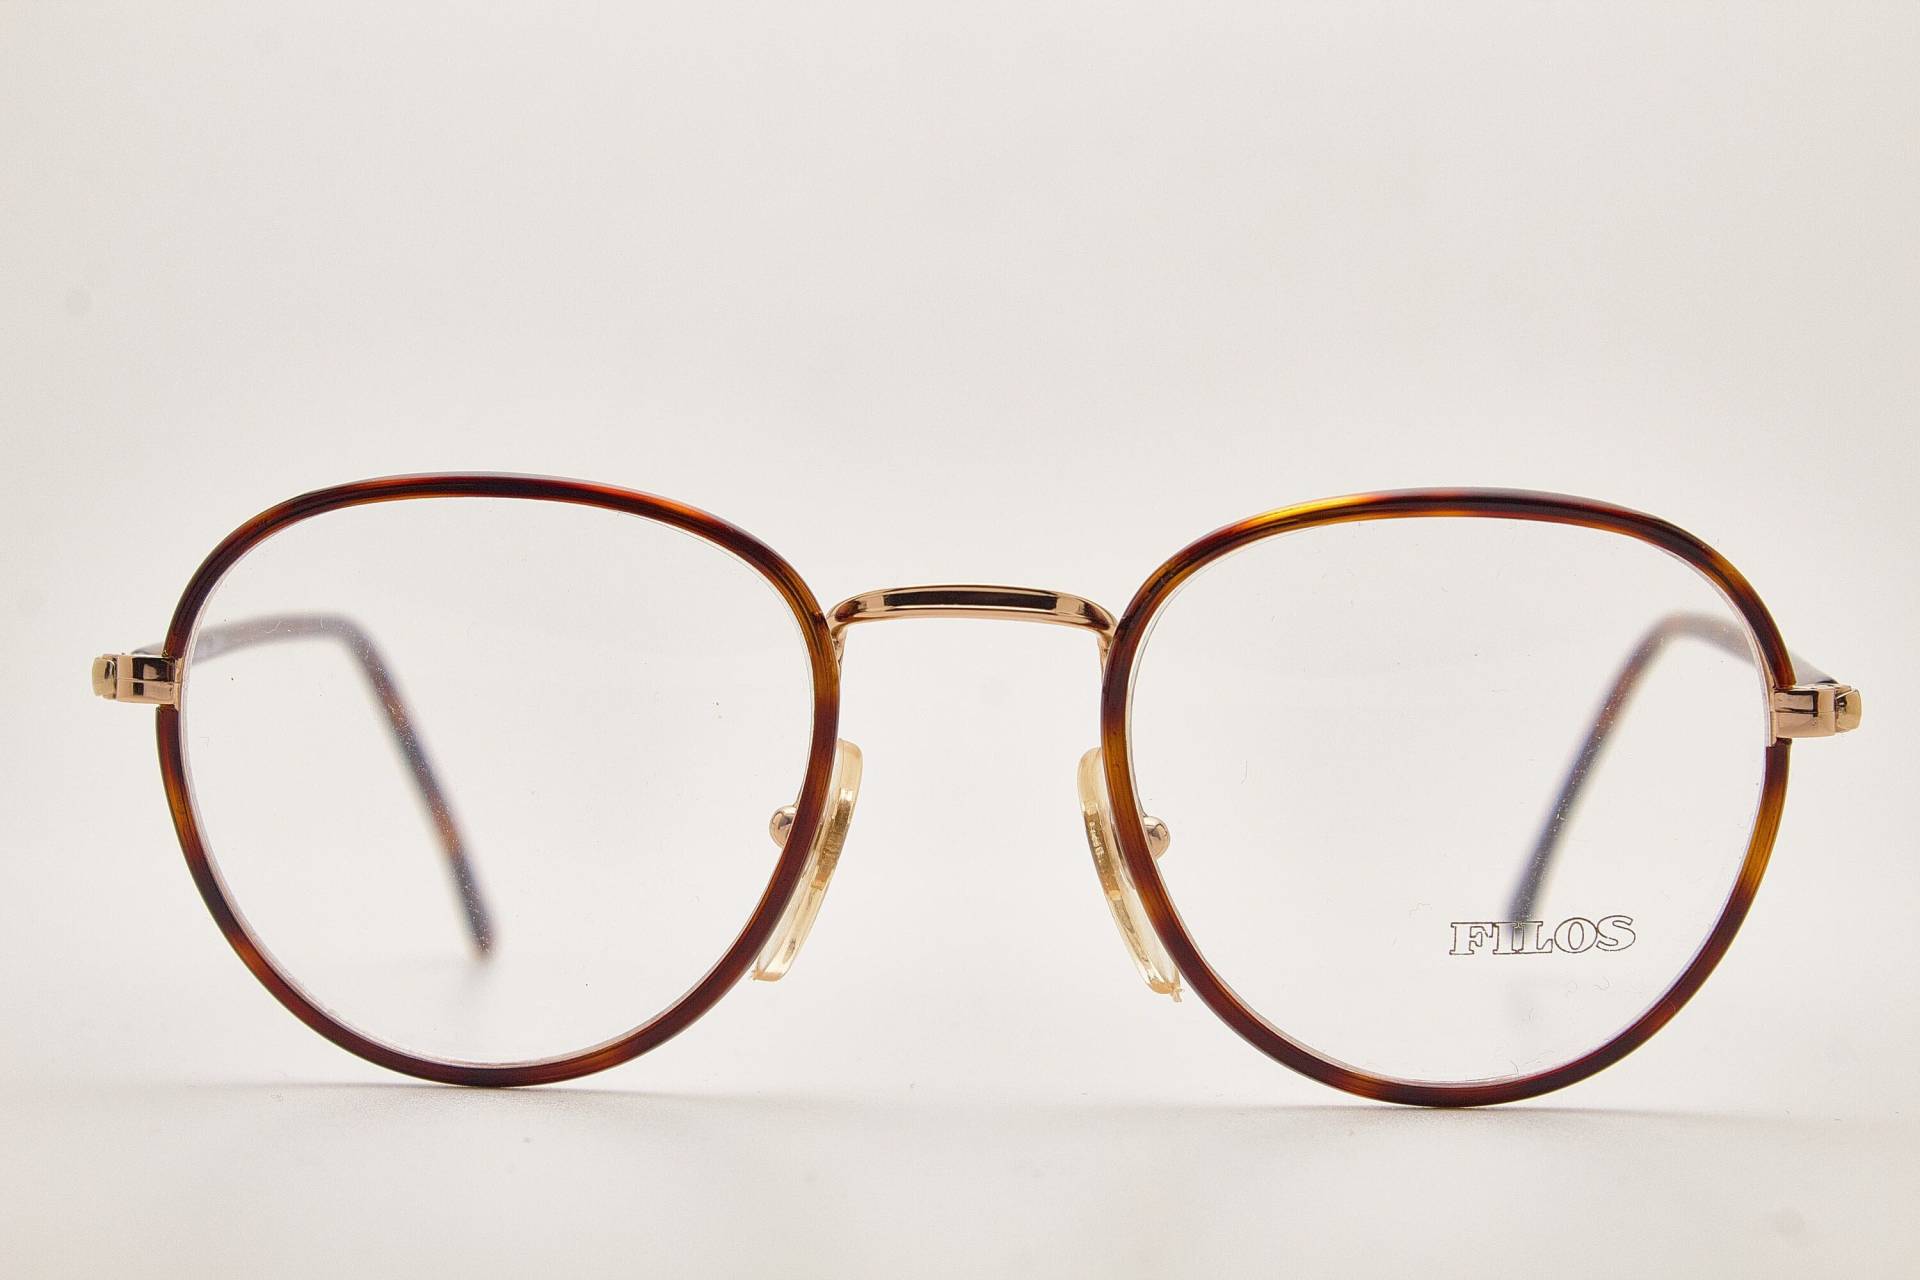 Filos 3498 44-20 Tortoise/Poliert Gold Runde Brille/Vintage Brille/Runde Brille Vintage/1990Er von VintageGlassesVault